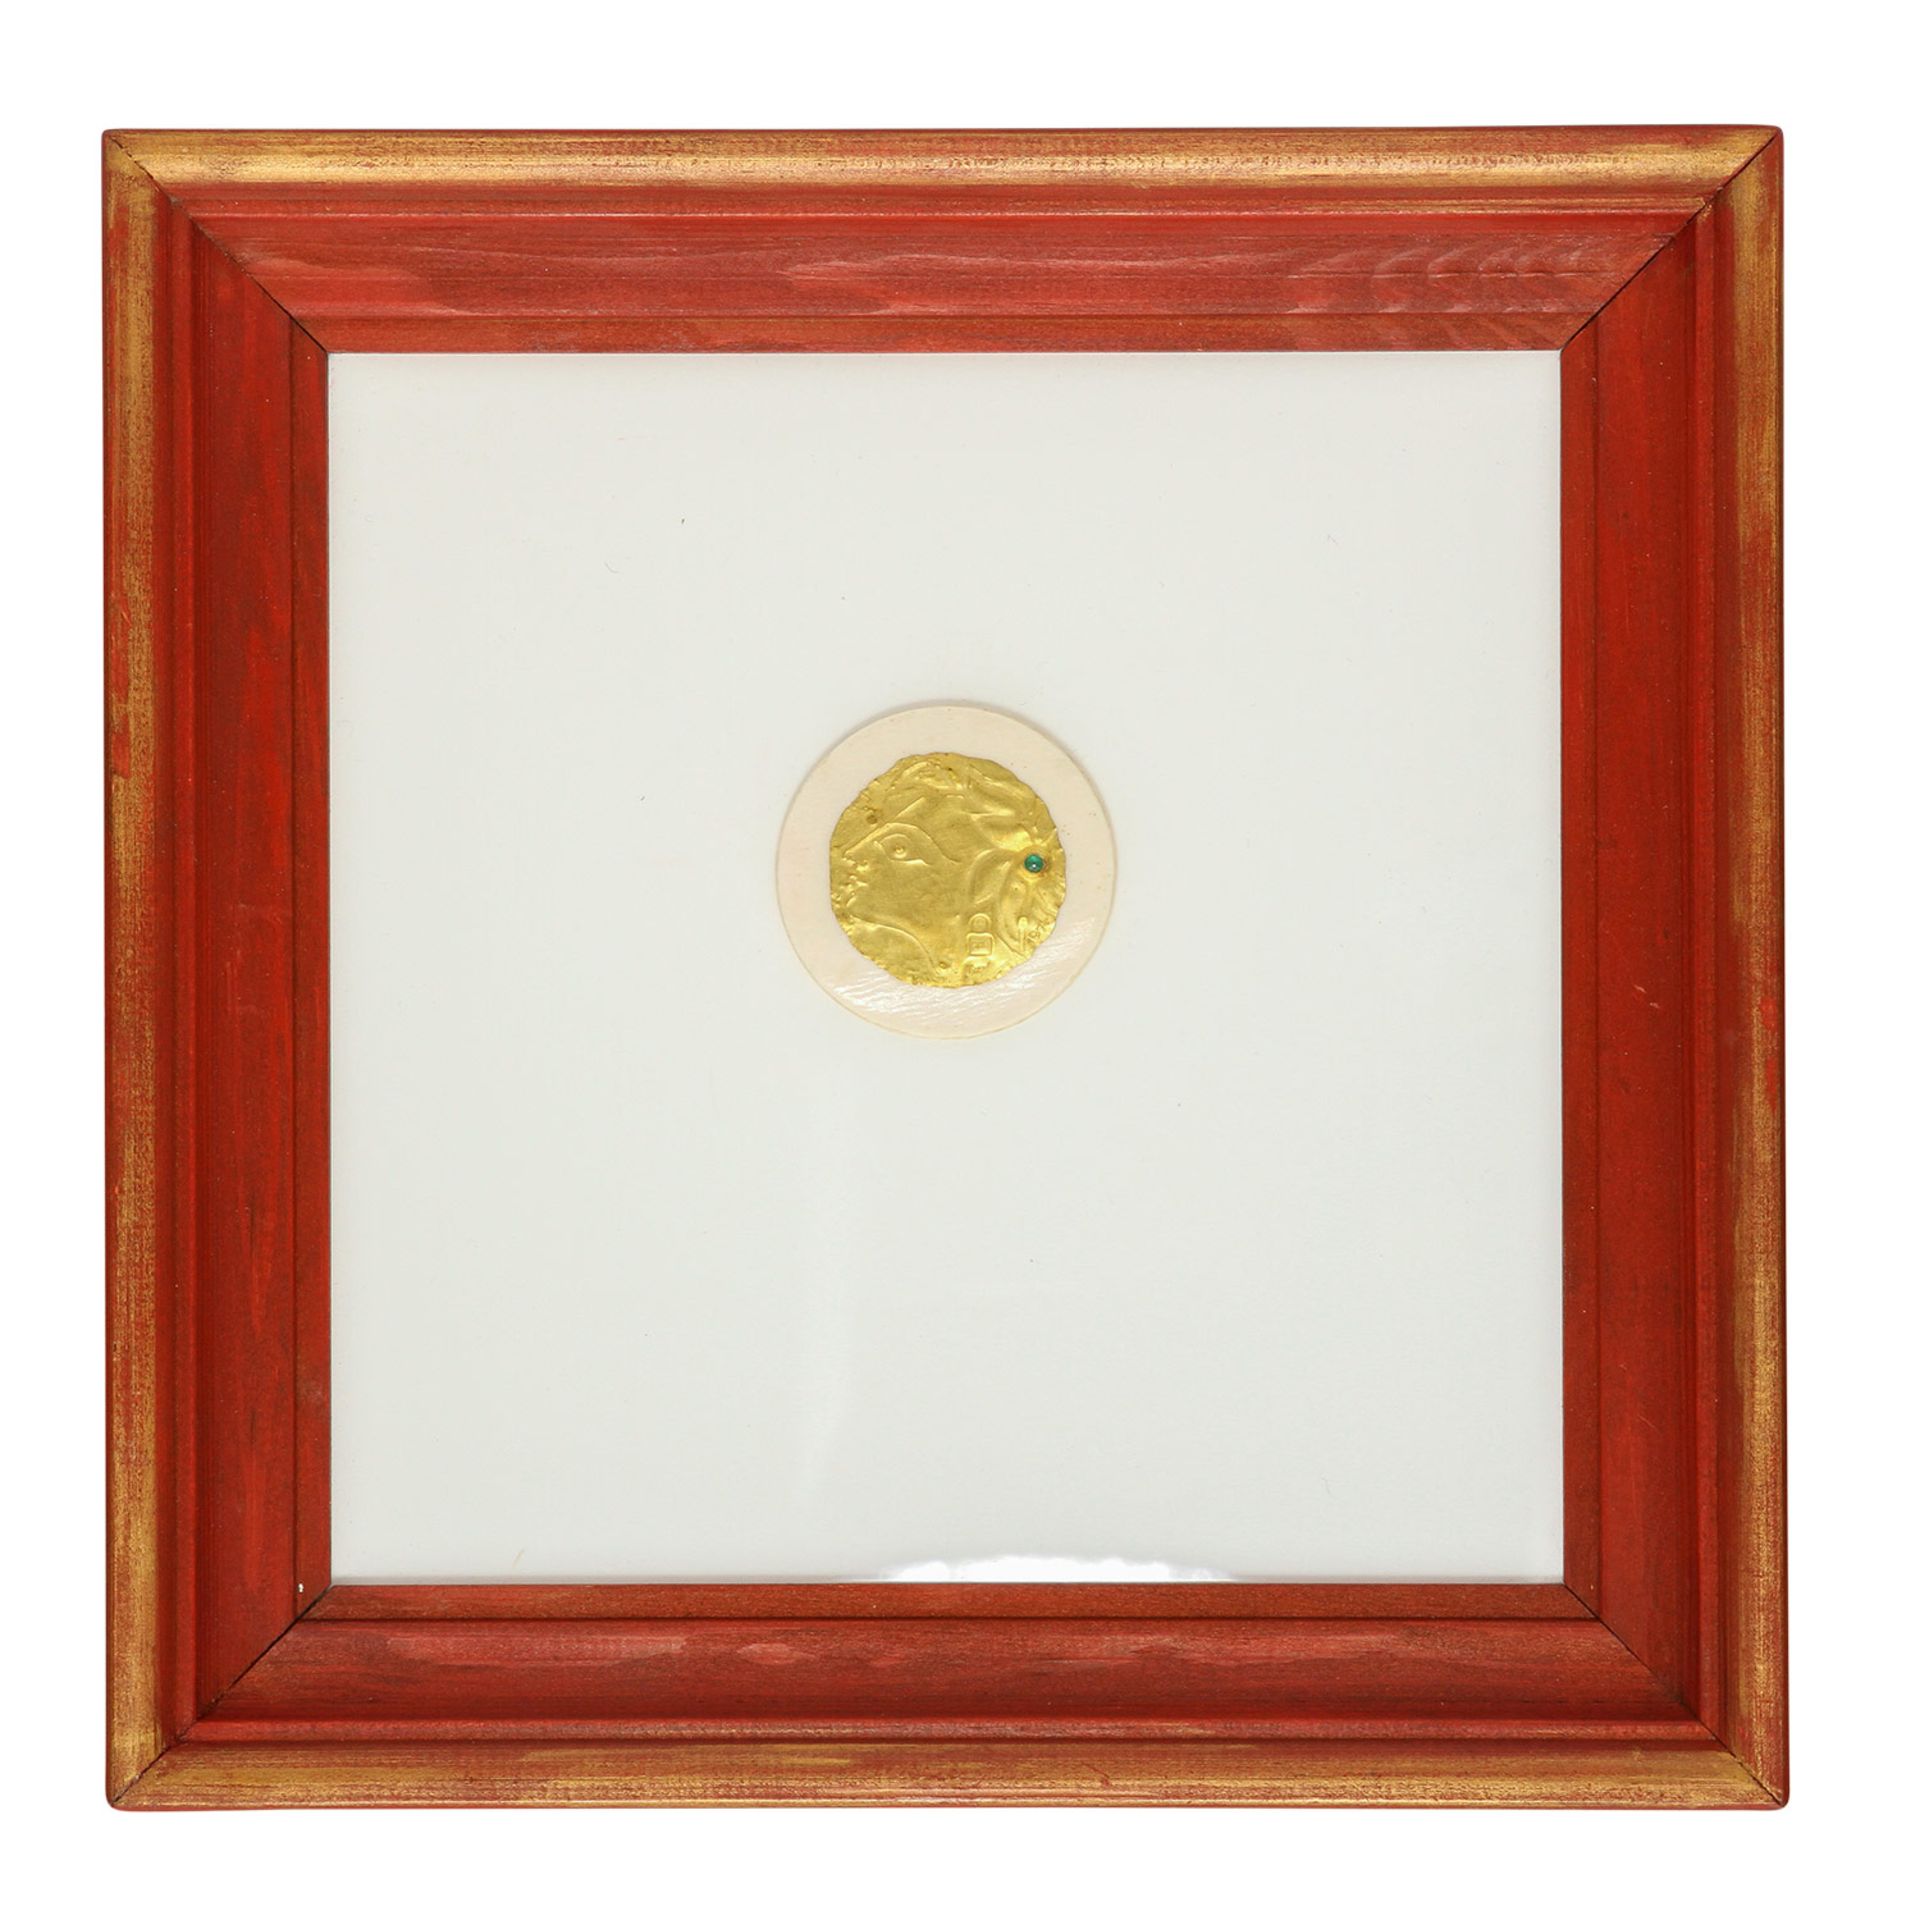 Goldminiatur "Kopf" (1974) von E. BURGEL,Gold 900, 1 Smaragd, getrieben + montiert, auf Acryl, in